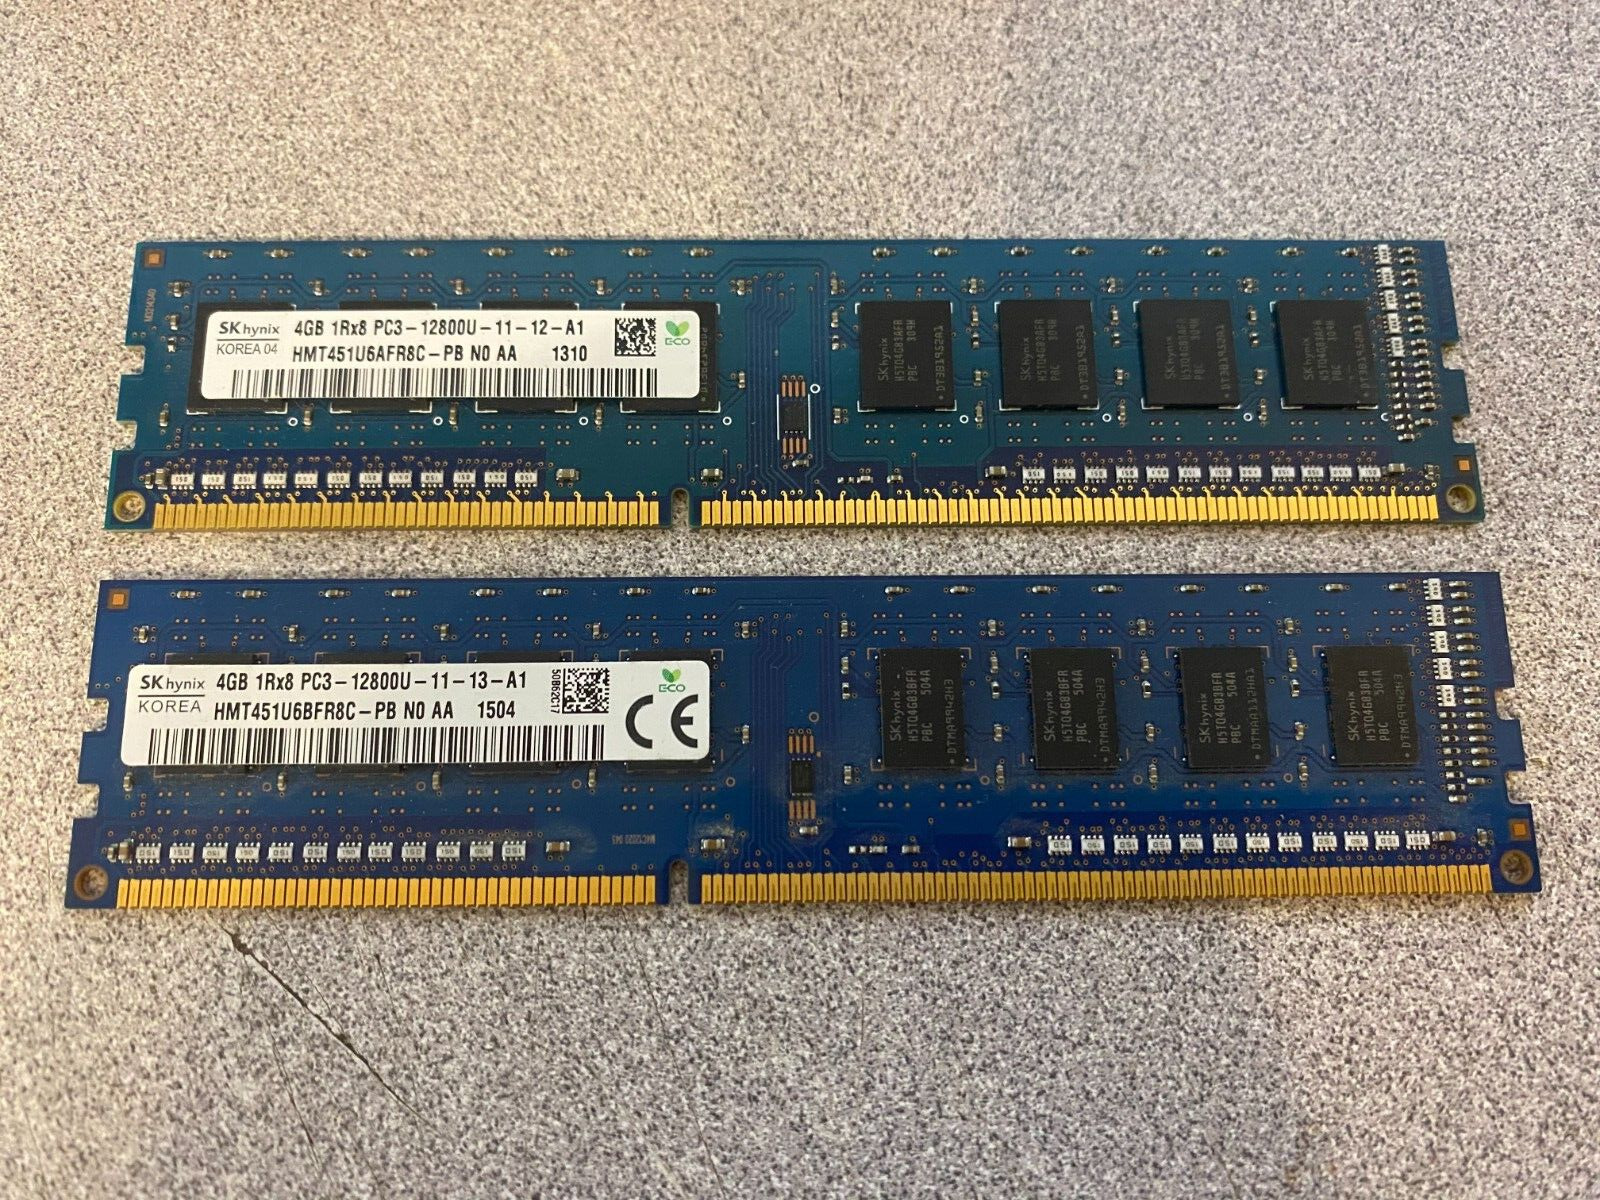 Lot of 8 GB (4 GB x 2 sticks) SK hynix DDR3-1600 PC3-12800U 12800 Desktop Memory